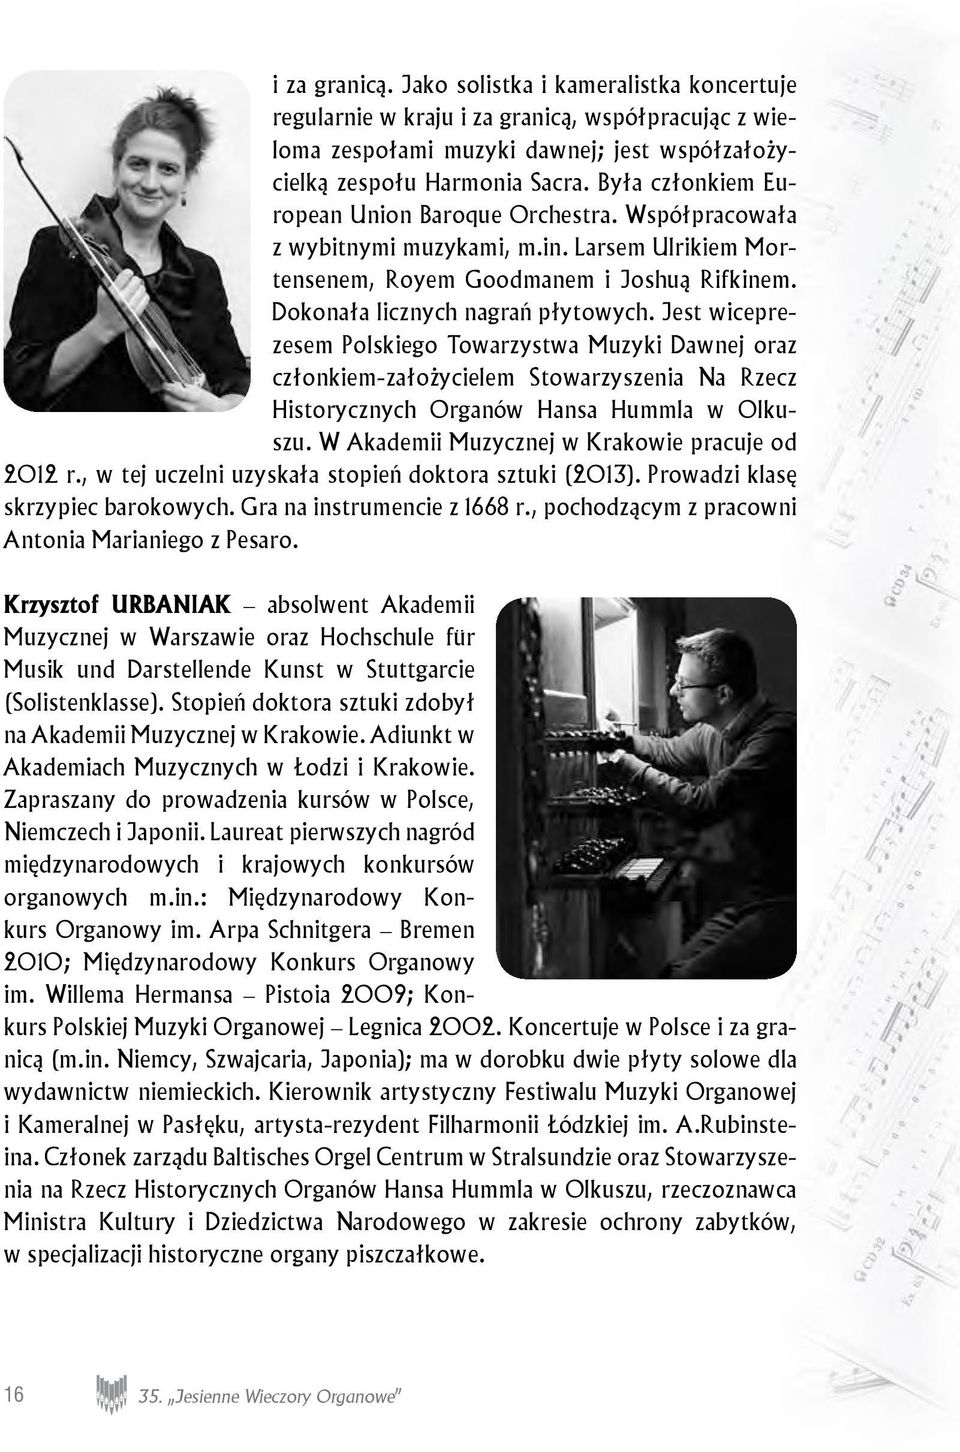 Jest wiceprezesem Polskiego Towarzystwa Muzyki Dawnej oraz członkiem-założycielem Stowarzyszenia Na Rzecz Historycznych Organów Hansa Hummla w Olkuszu.